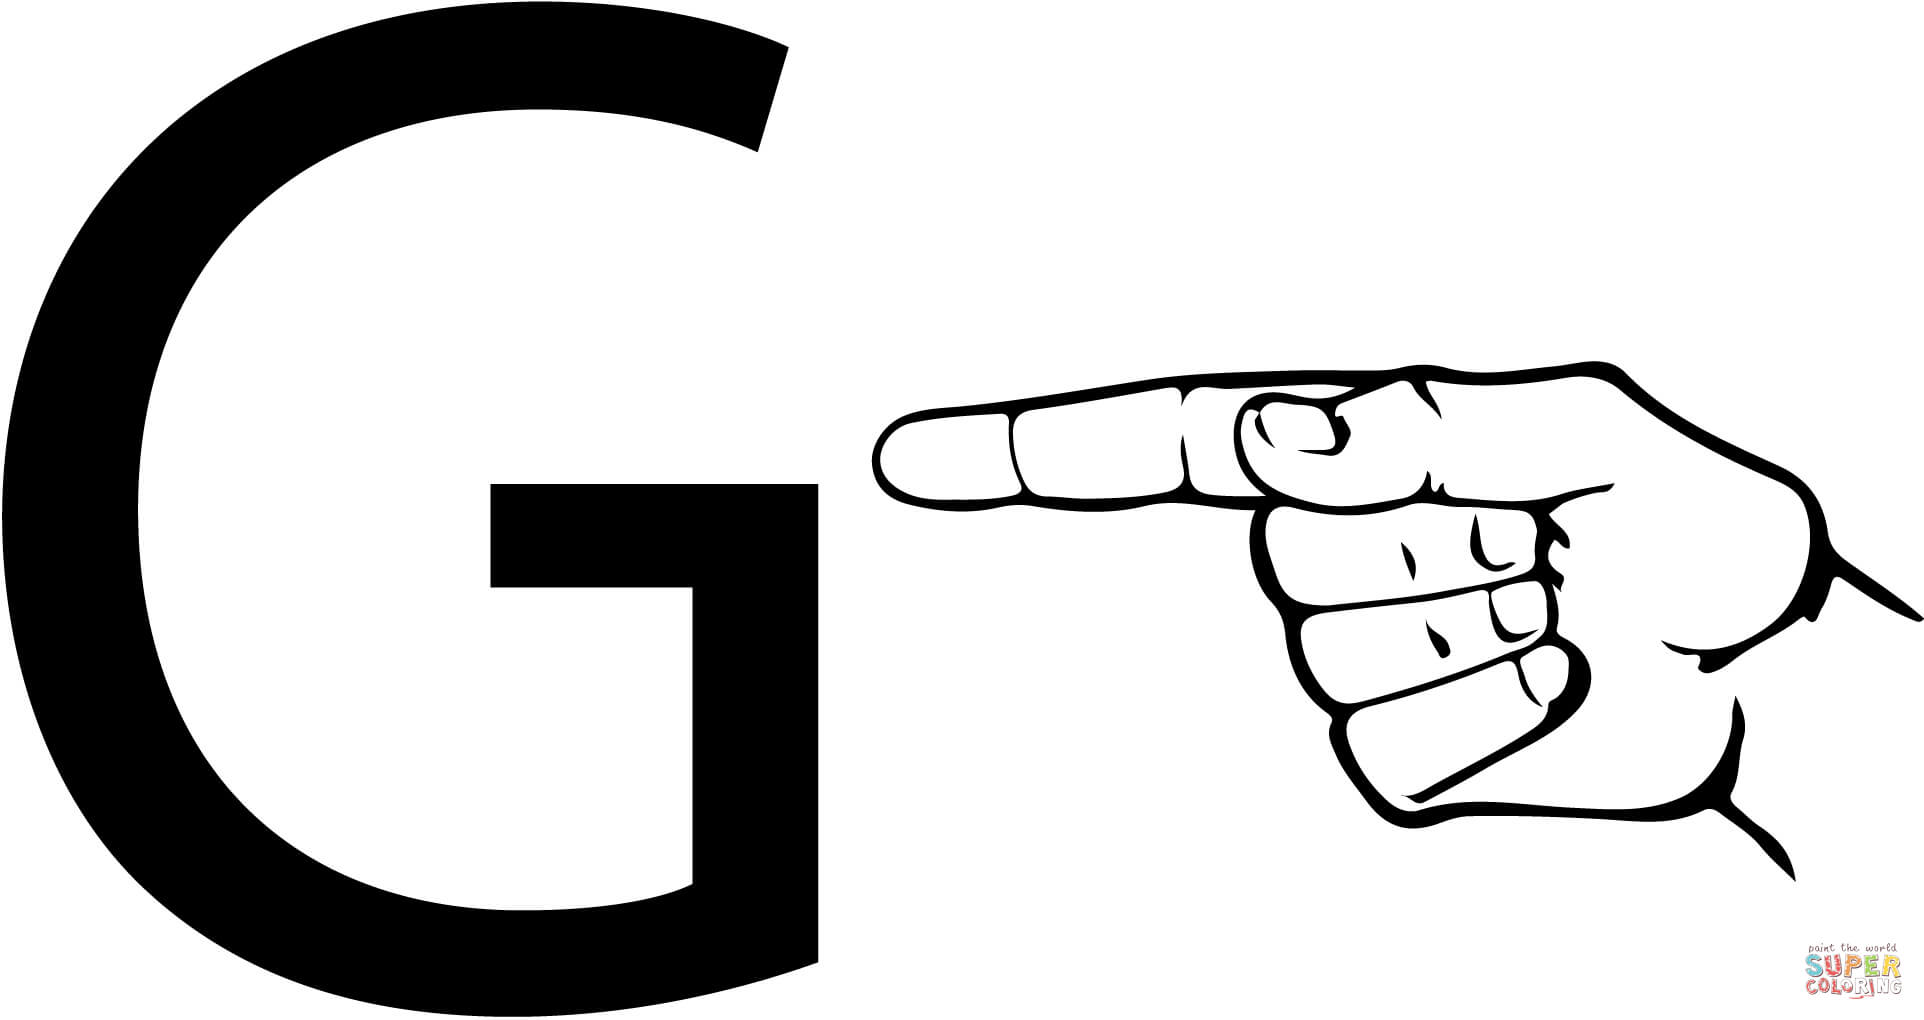 Lettre G en langue des signes ASL à partir de la lettre G